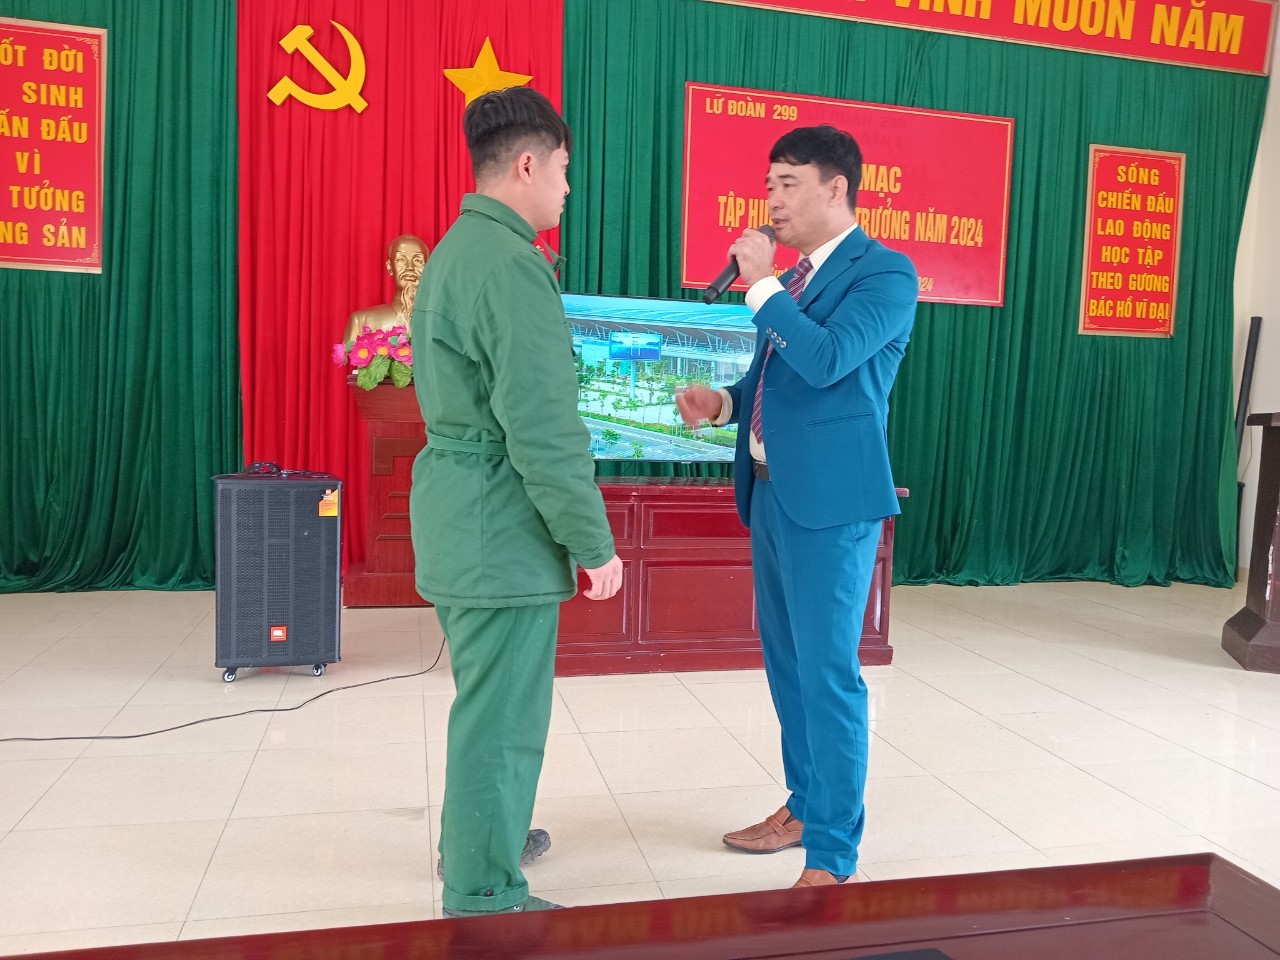 VPTS Ninh Bình-Tư vấn, định hướng nghề cho bộ đội xuất ngũ Lữ đoàn 299